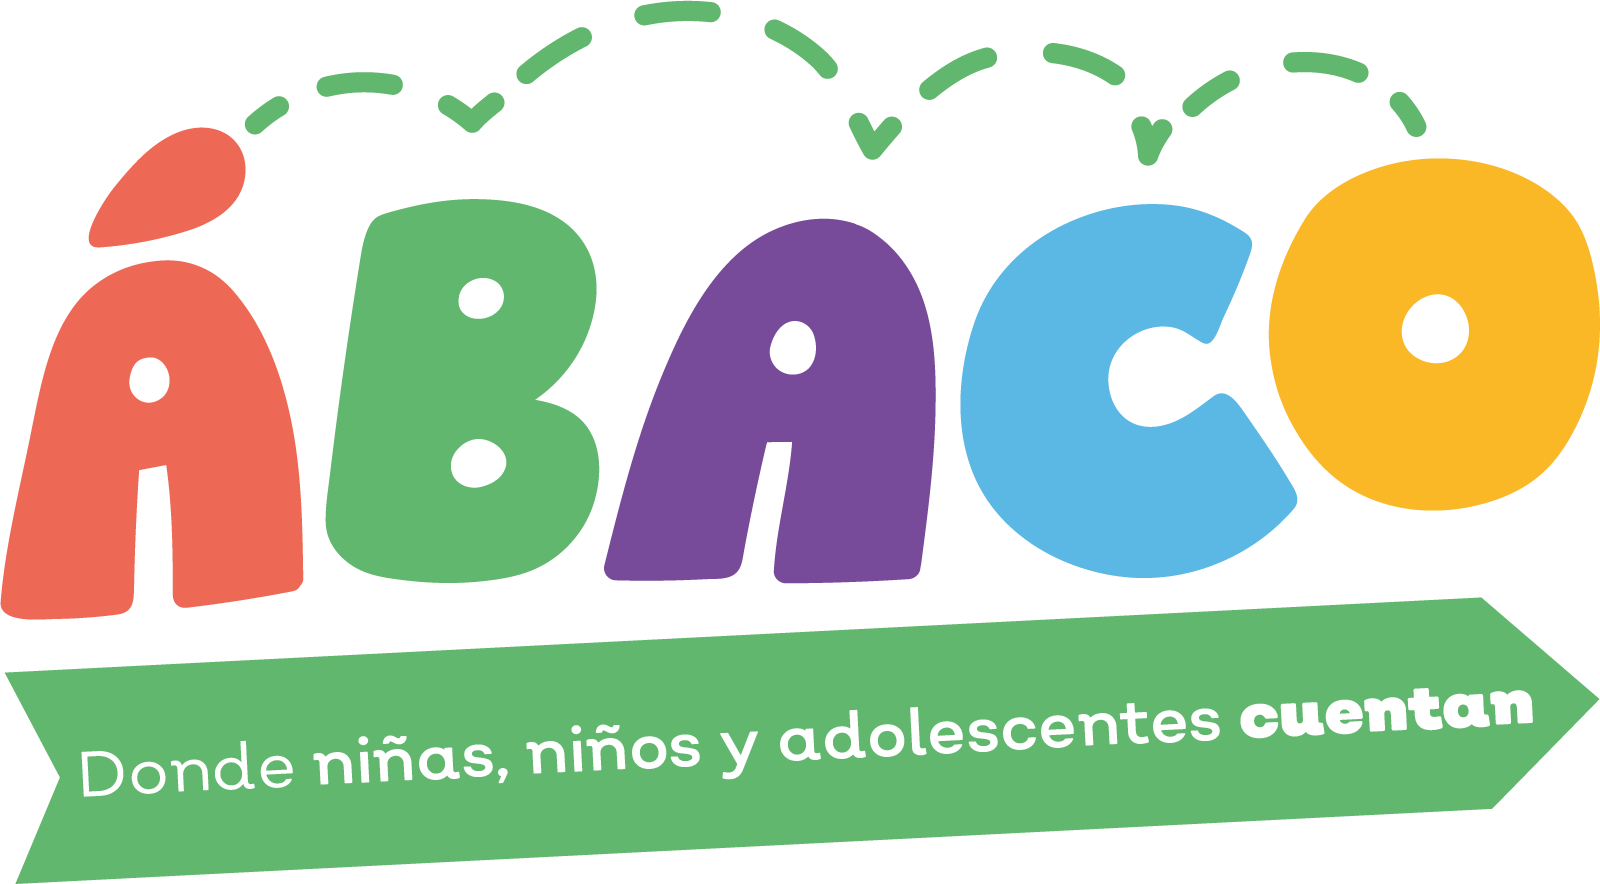 AbaClub